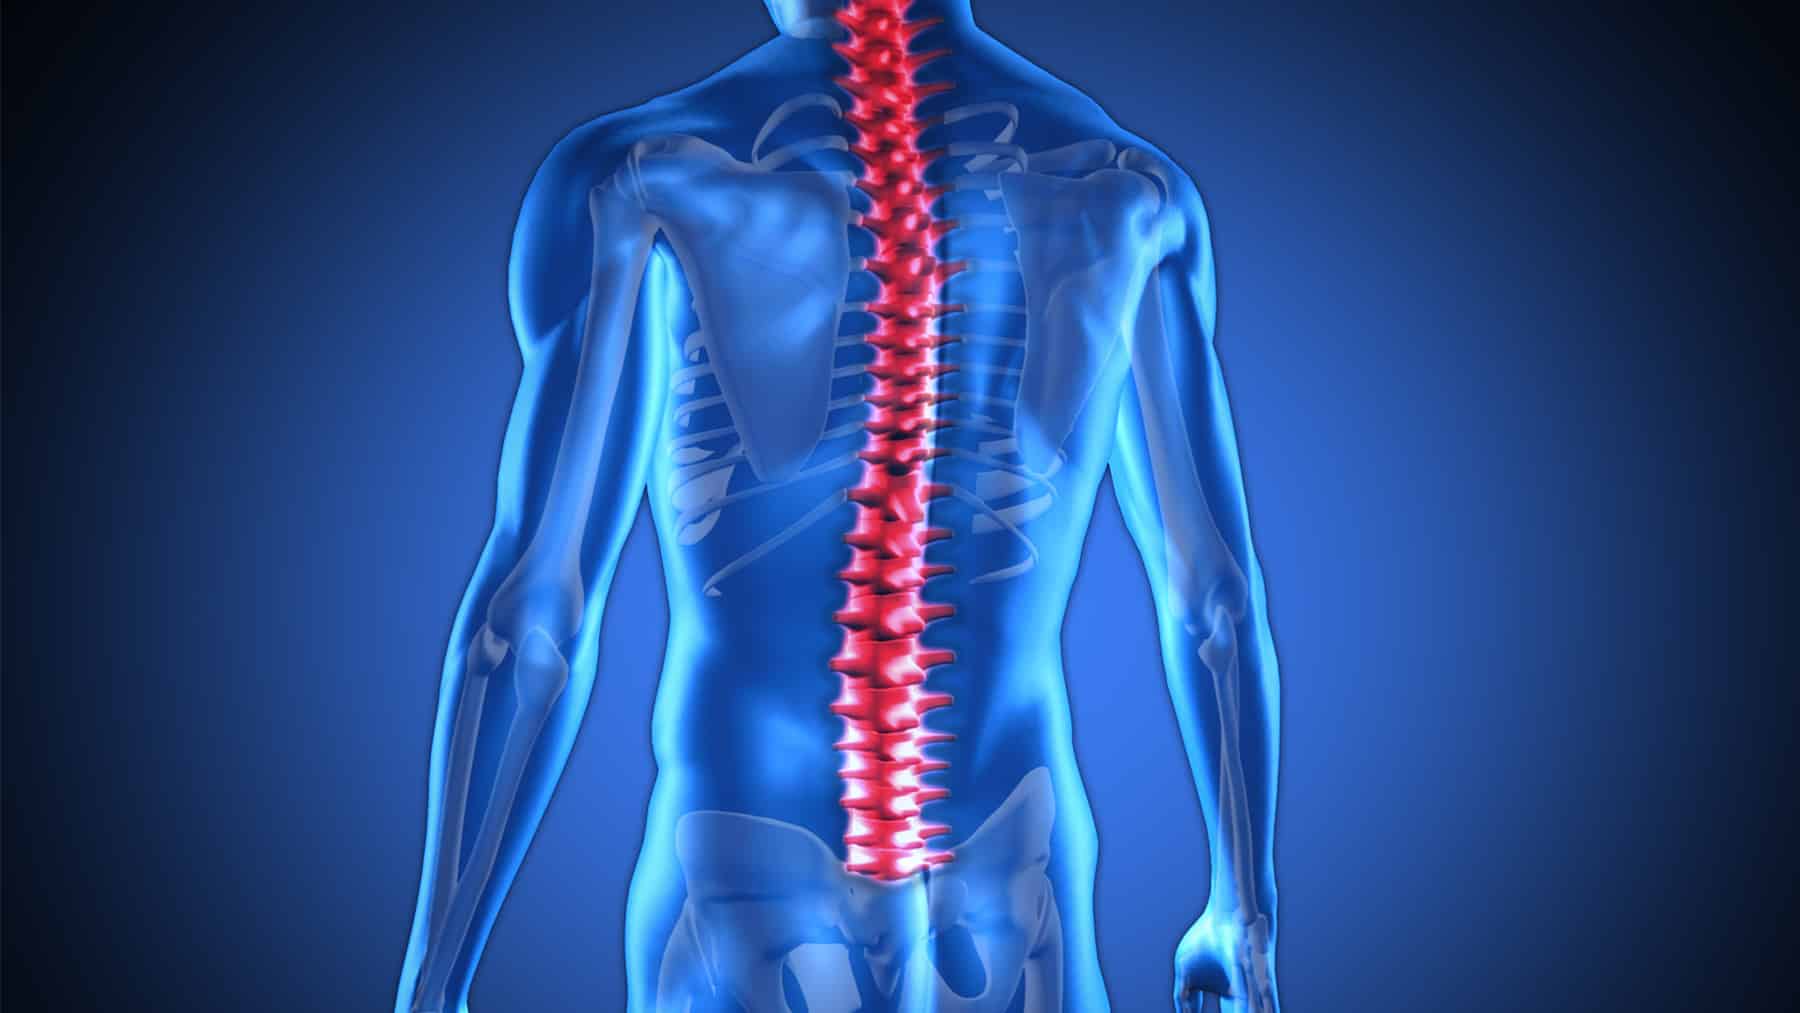 Comprehensive Spinal Care Doral Orthopedic Center